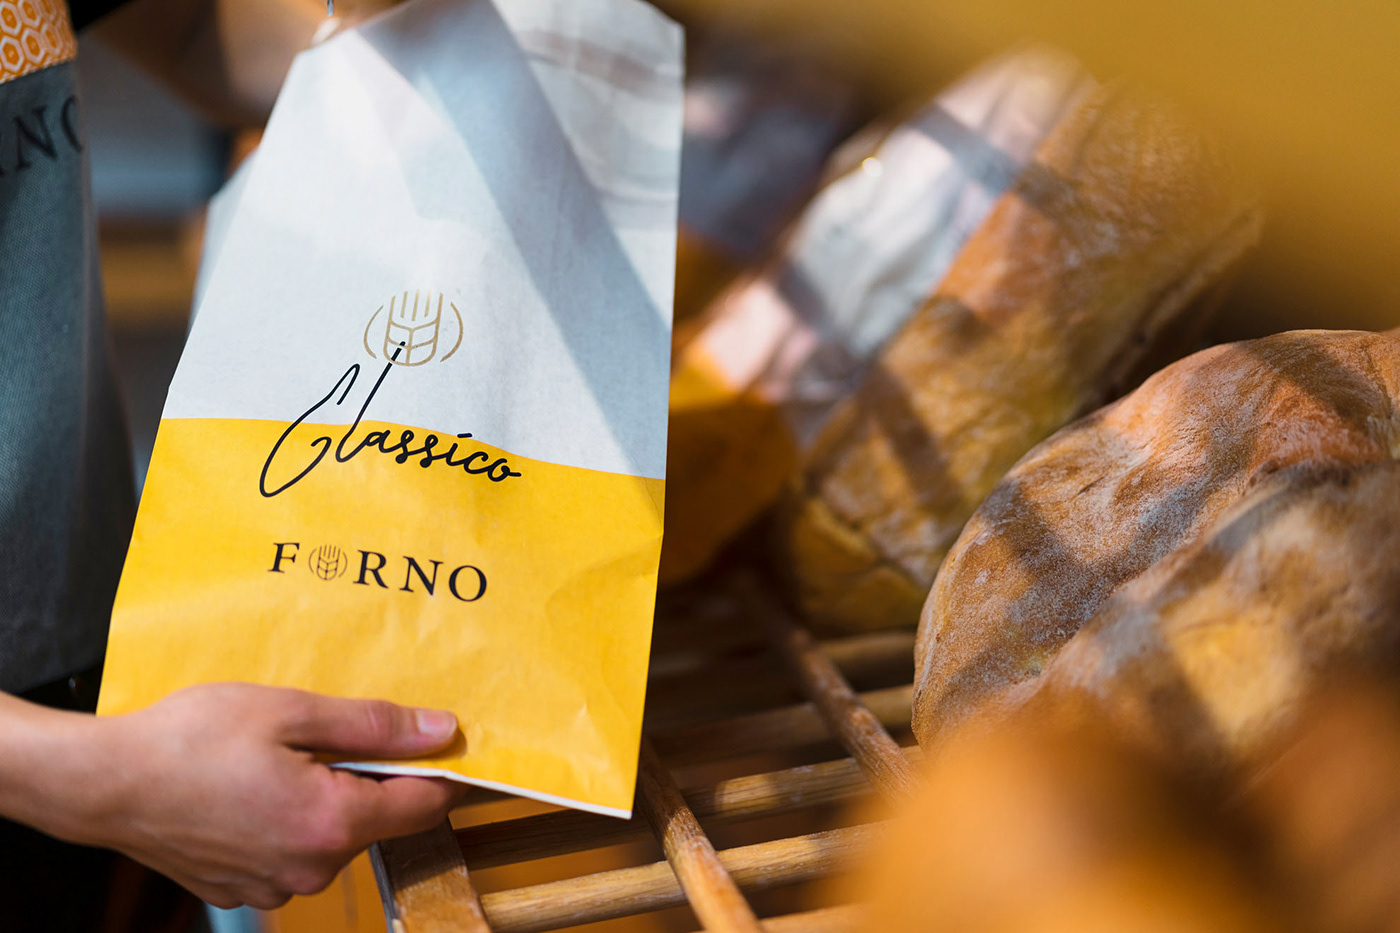 Forno Classico面包房品牌重塑